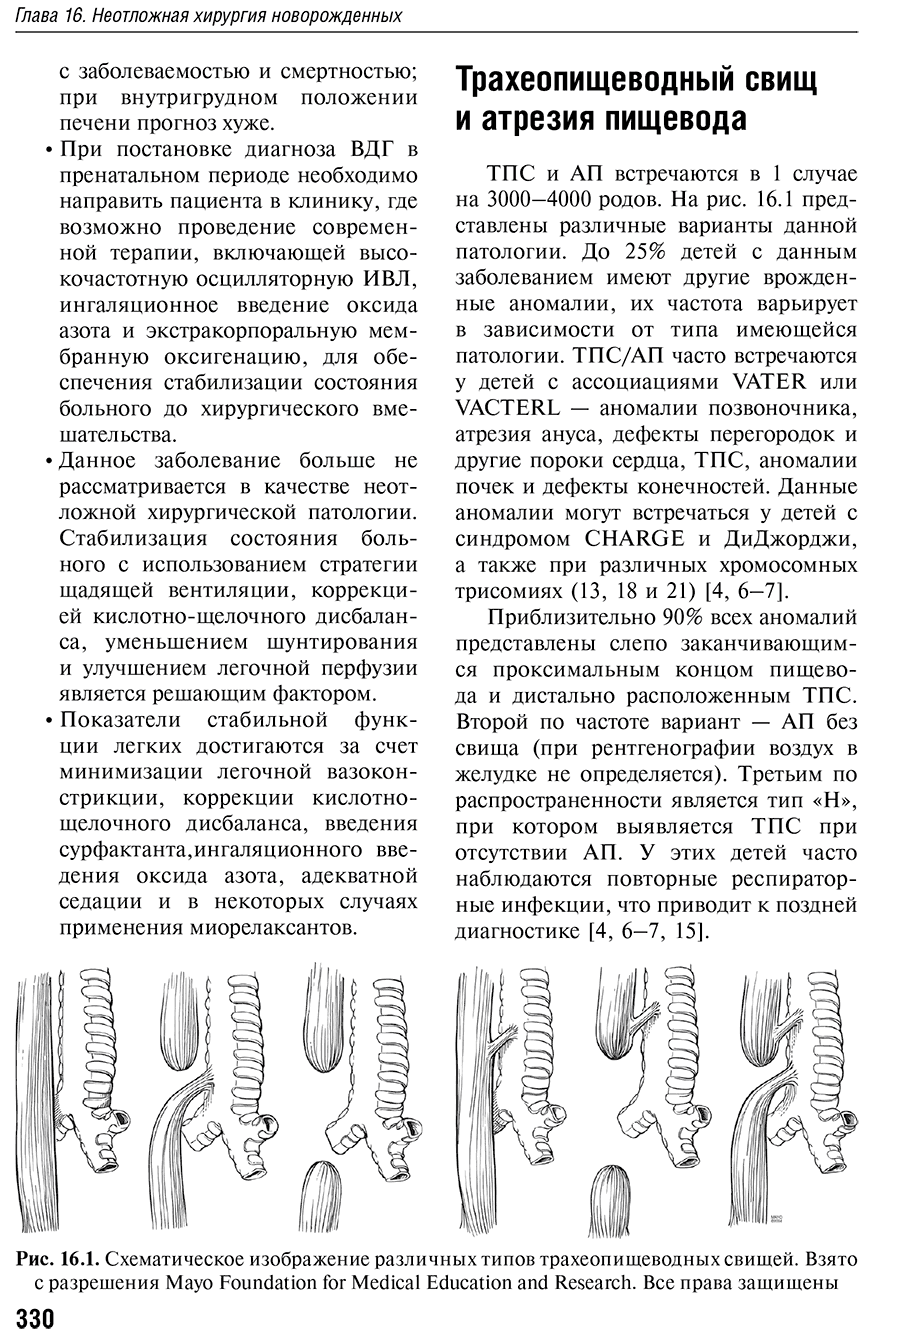 Рис. 16.1. Схематическое изображение различных типов трахеопищеводных свищей.